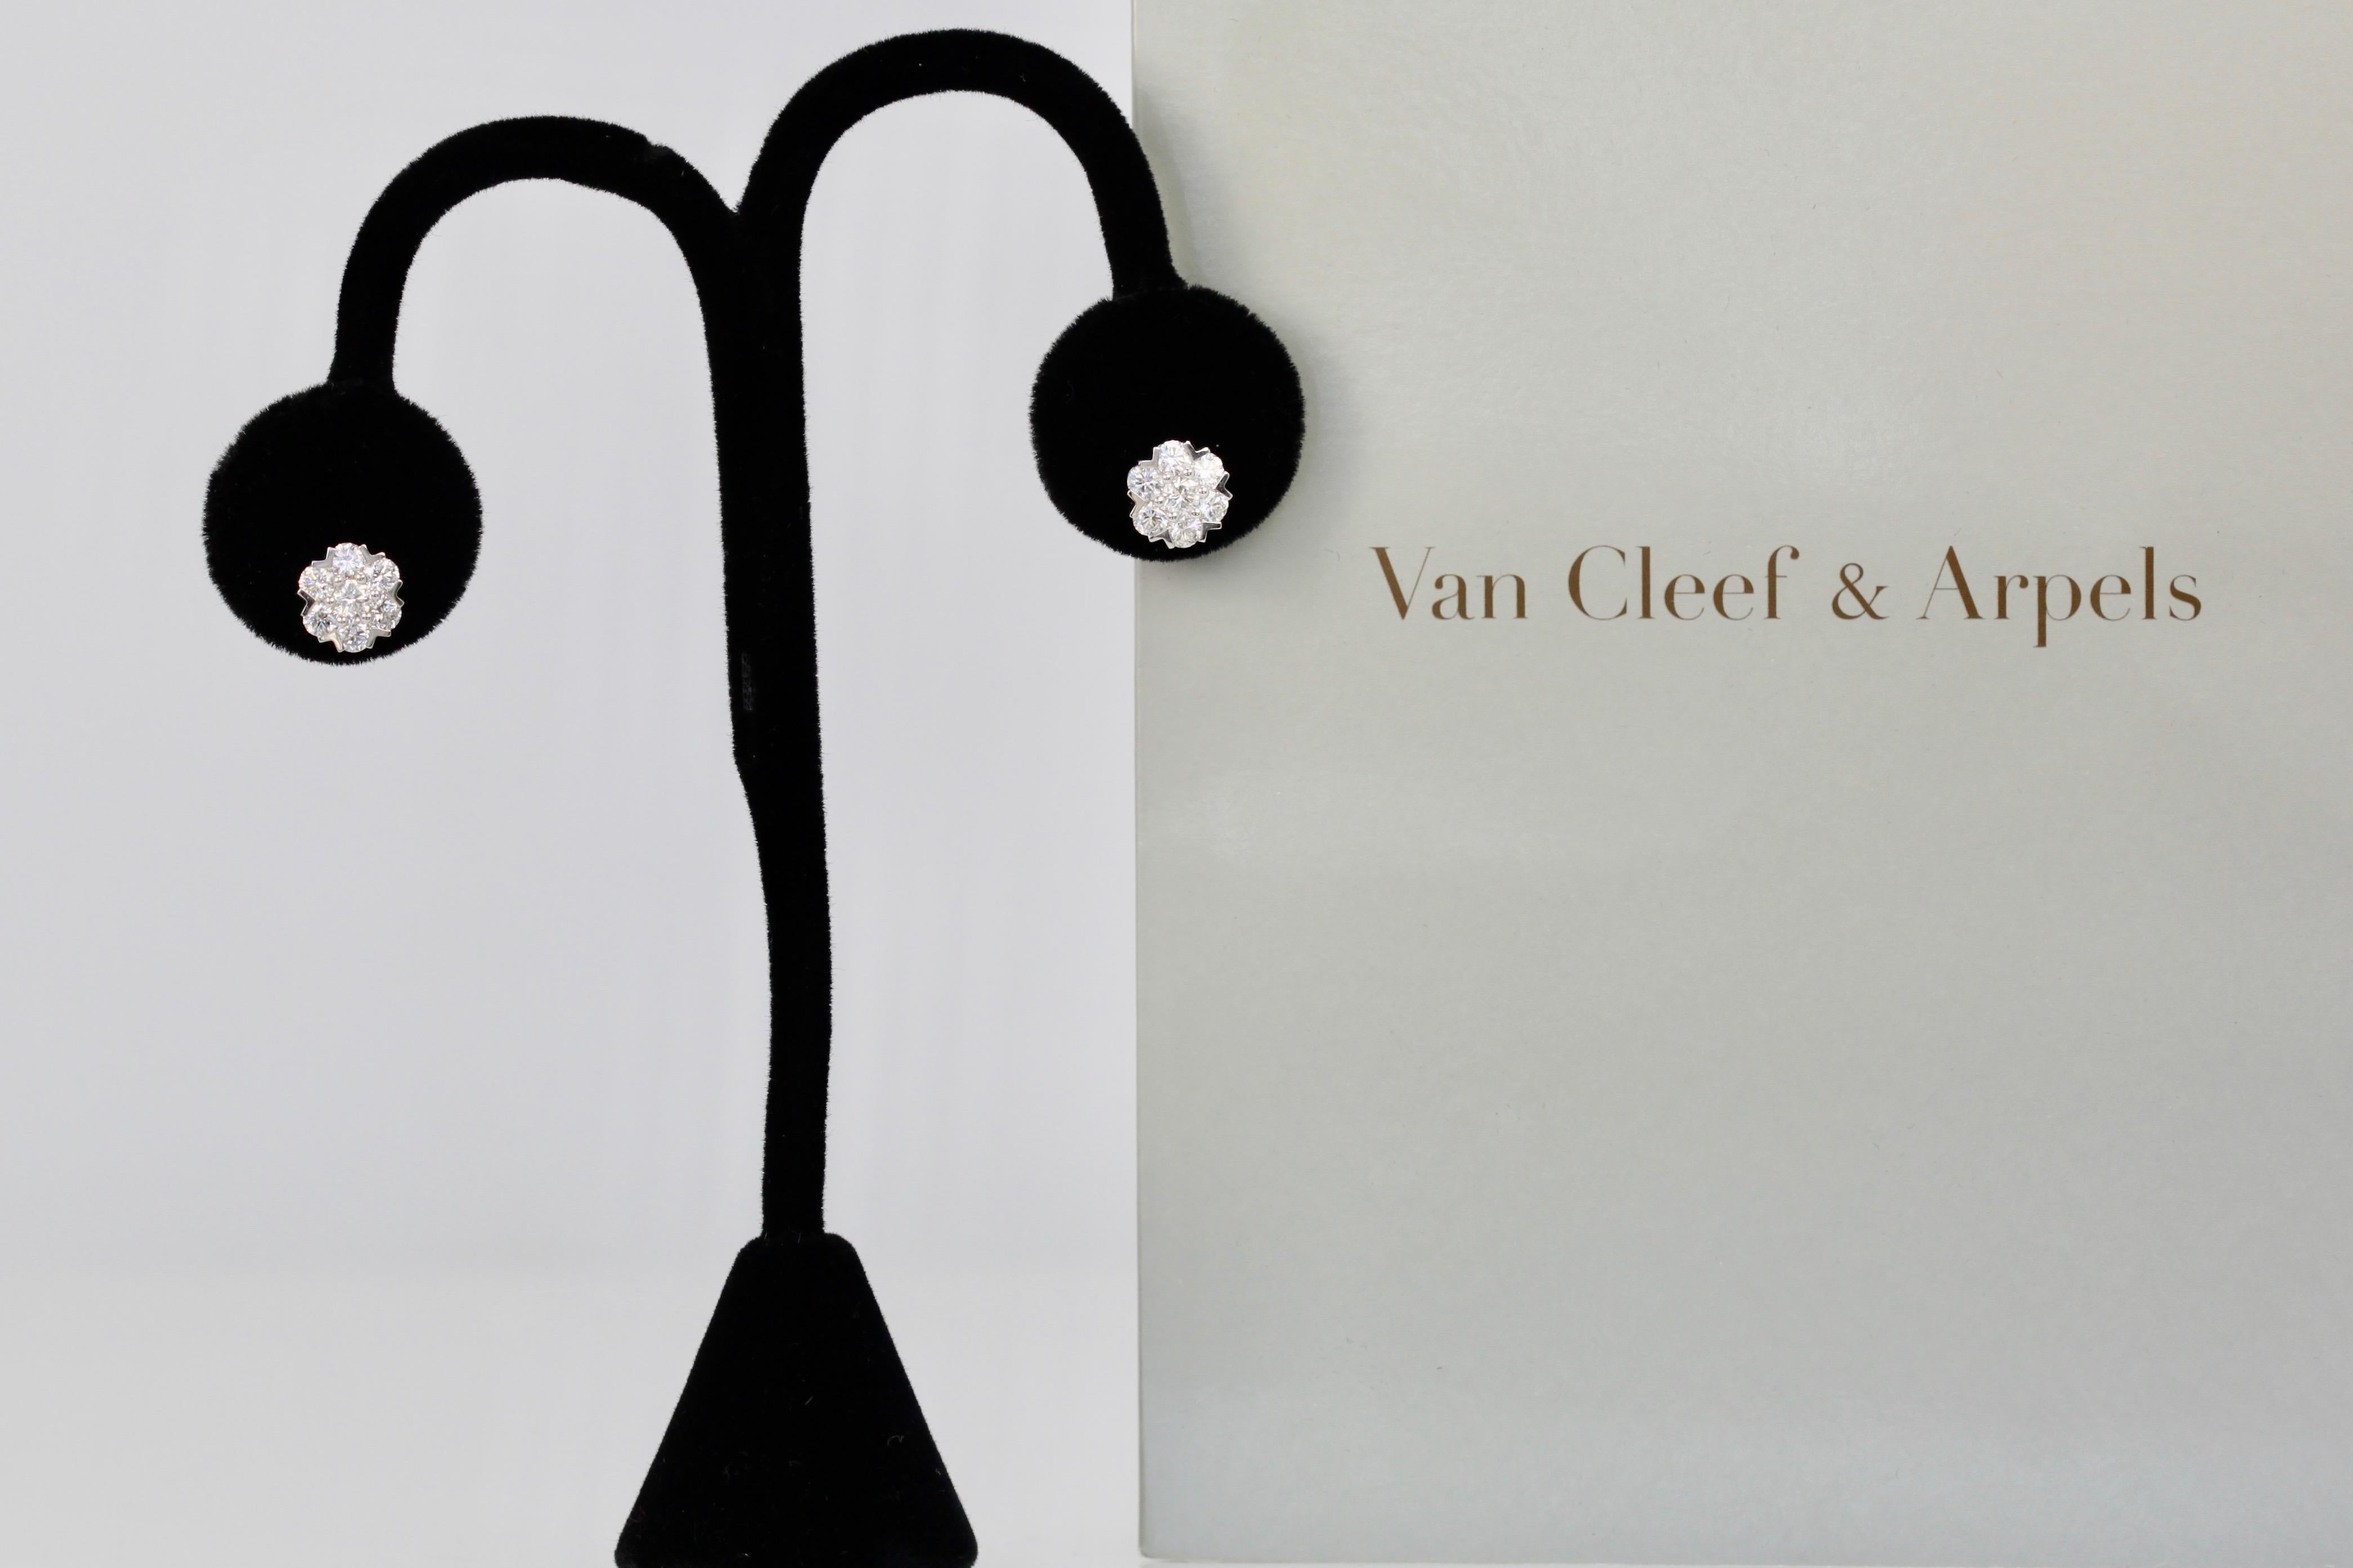 Van Cleef & Arpels Fleurette Large Diamond Stud Earrings 2